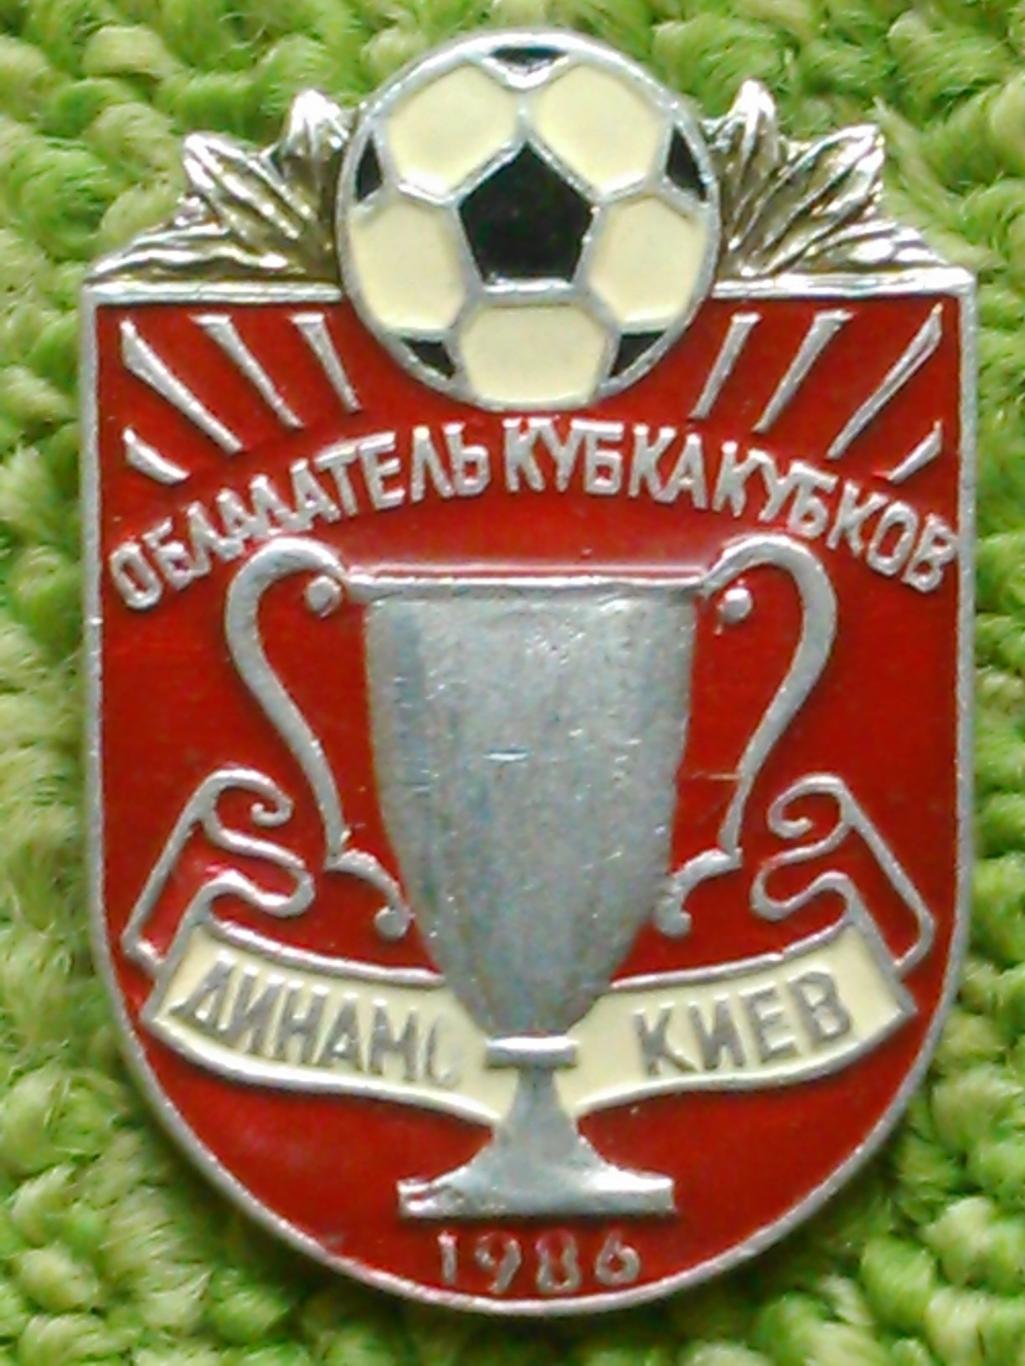 ДИНАМО Киев Кубок КУБКОВ 1986. № 737. Ukraine Footbal Badge. Оптом скидки 45%